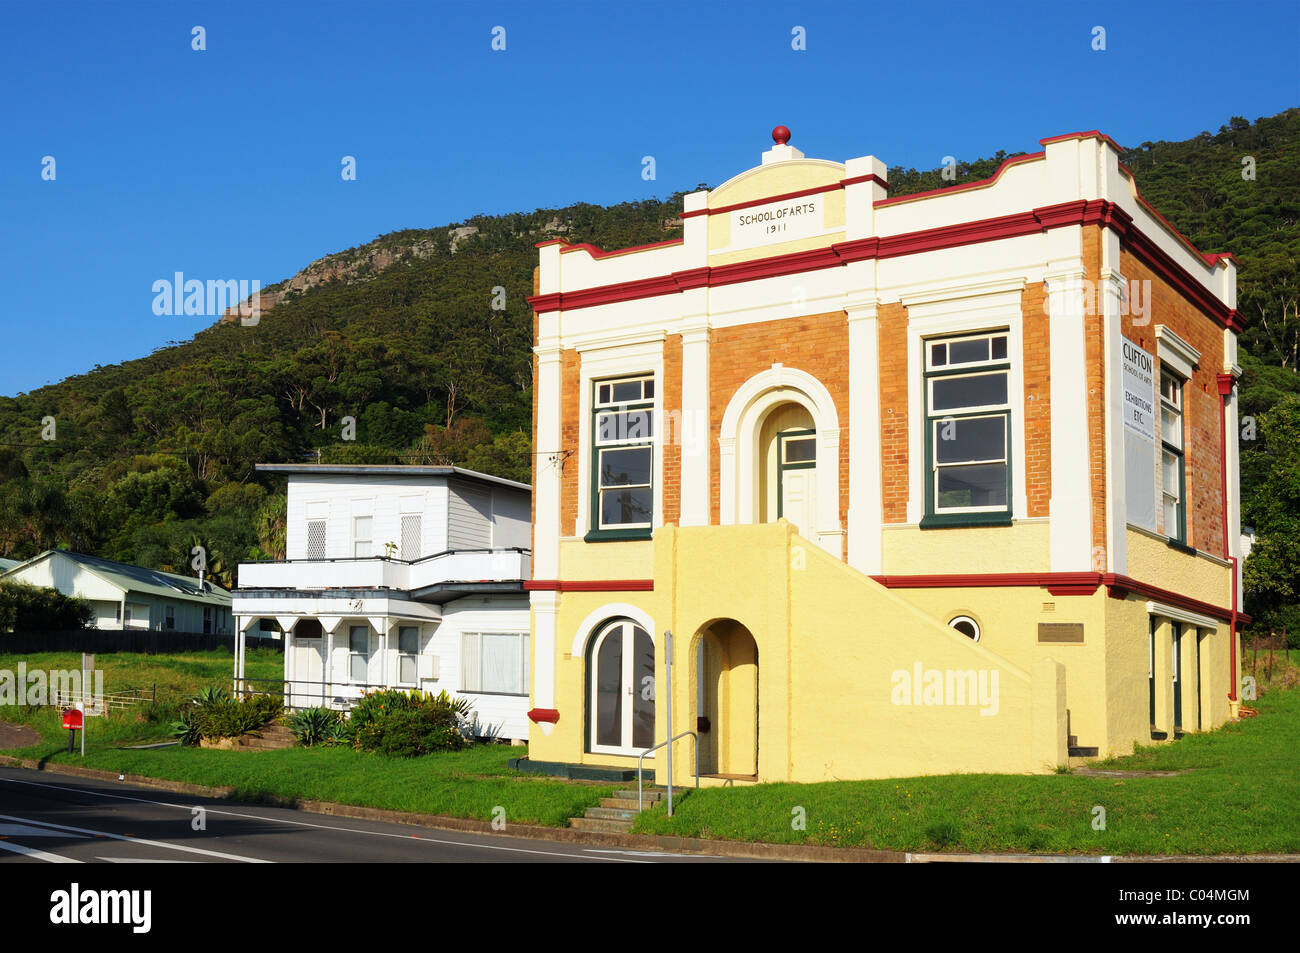 La vecchia scuola di arti edificio in Clifton, vicino al Ponte Seacliff nel Nuovo Galles del Sud Australia Foto Stock